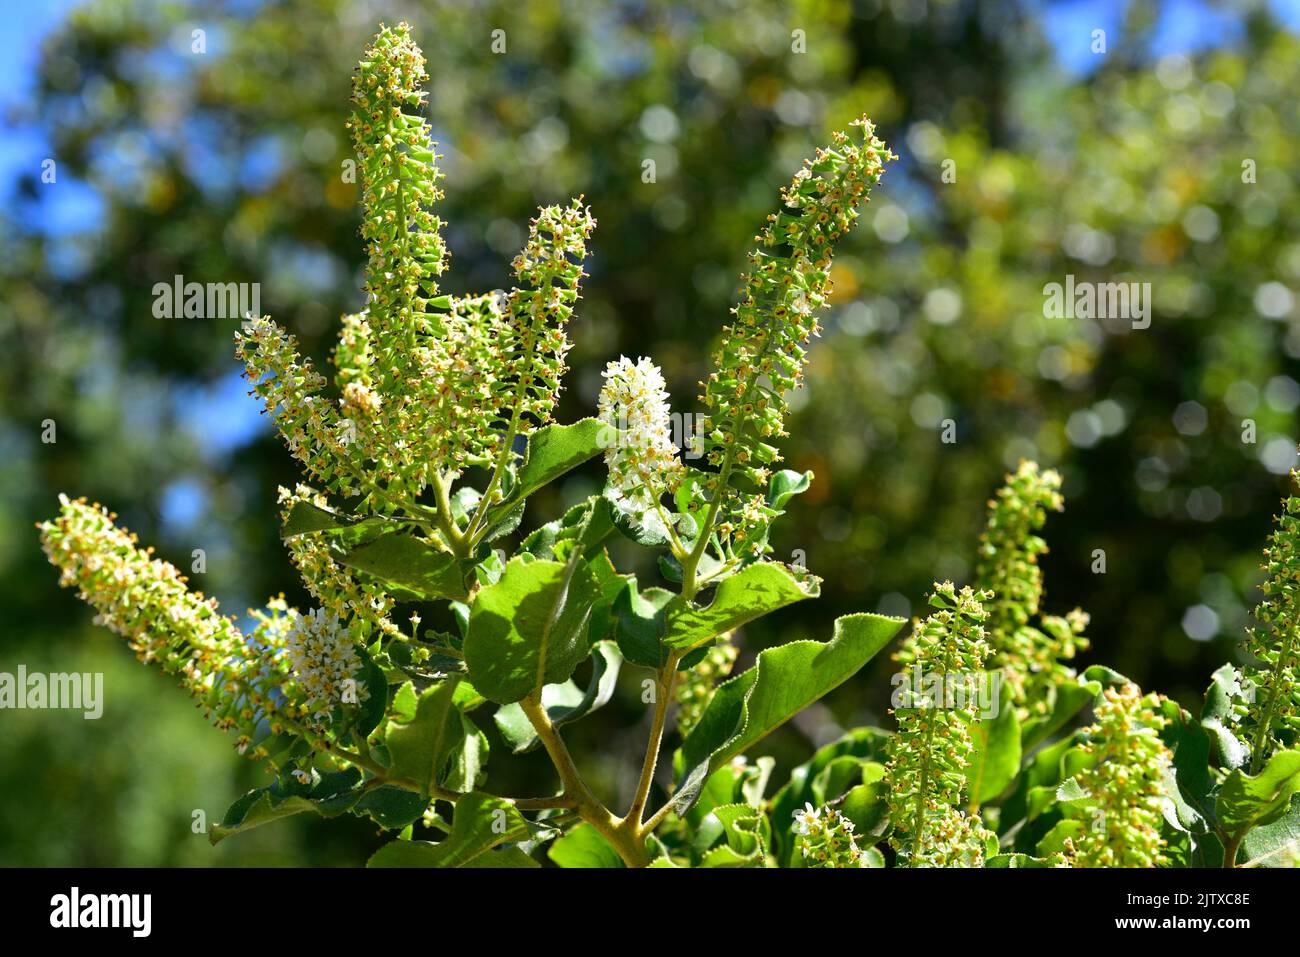 Corontillo (Escallonia pulverulenta) ist ein mehrjähriger Strauch, der in Zentralchile beheimatet ist. Blumen und junge Früchte Detail. Stockfoto